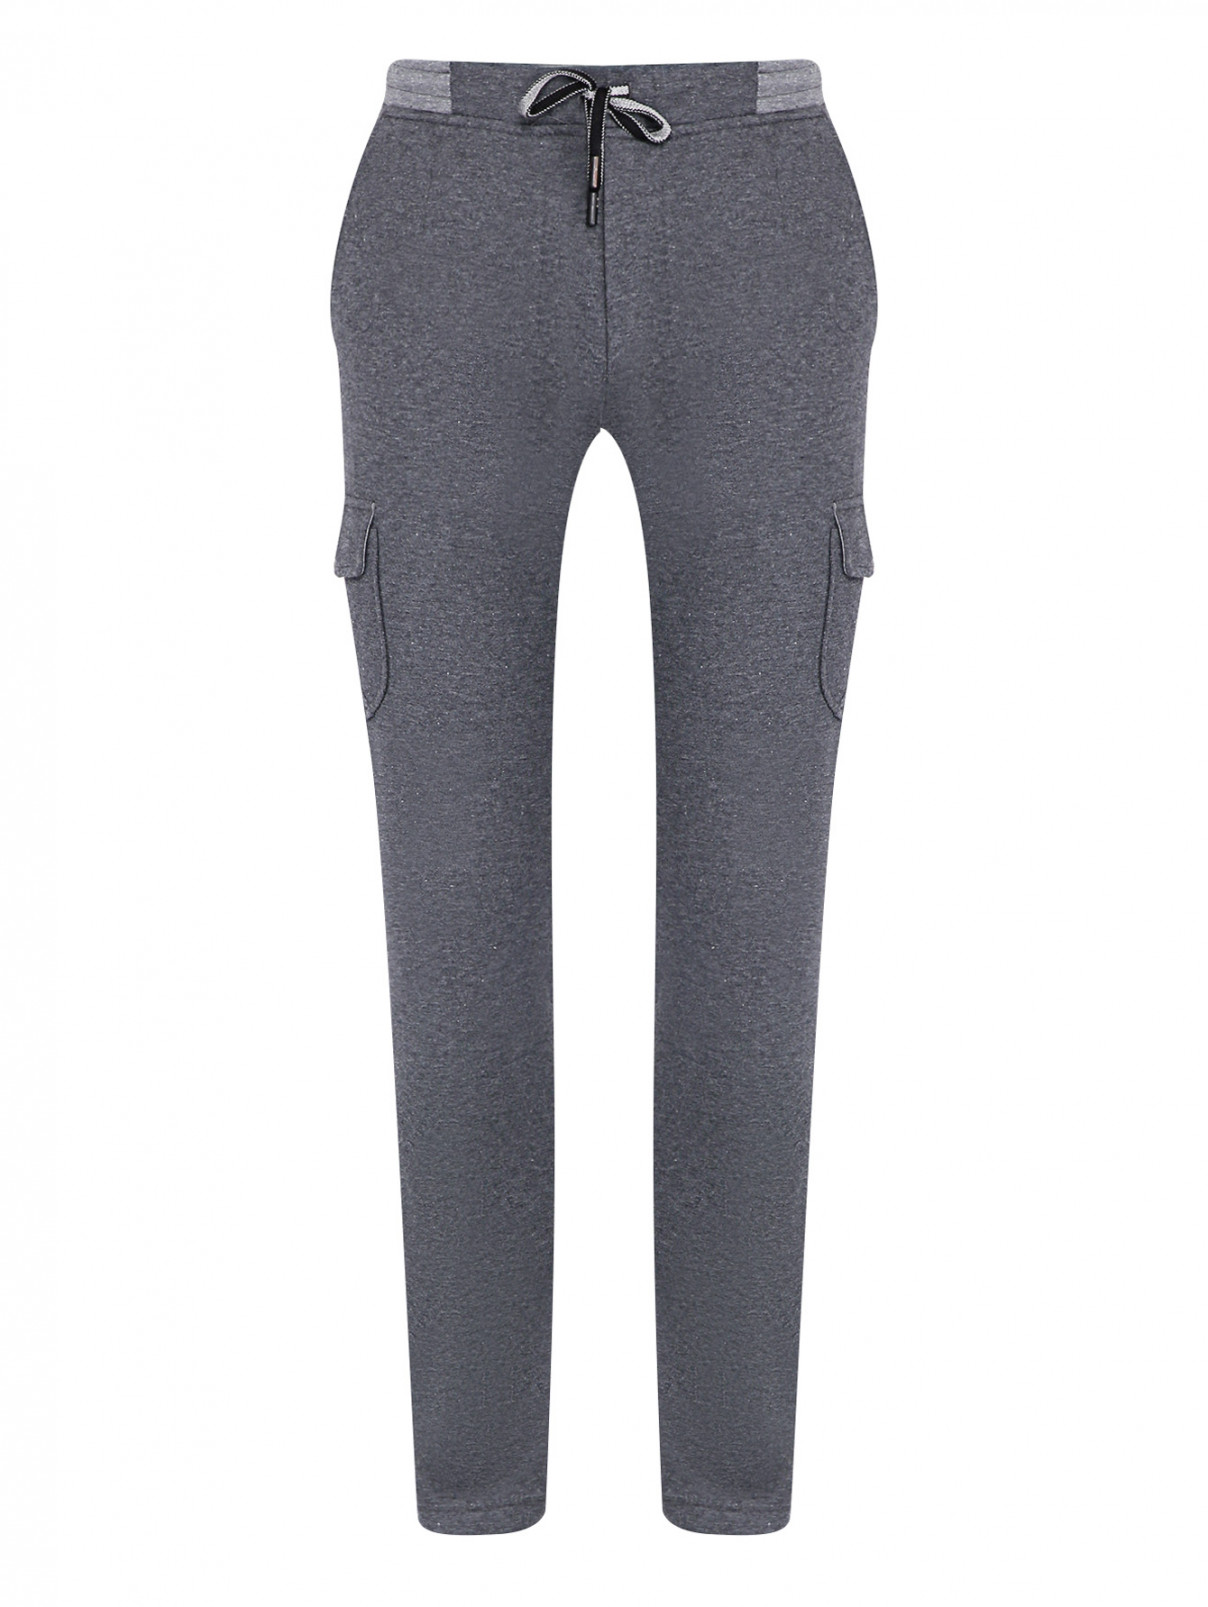 Трикотажные брюки на резинке с карманами Capobianco  –  Общий вид  – Цвет:  Серый